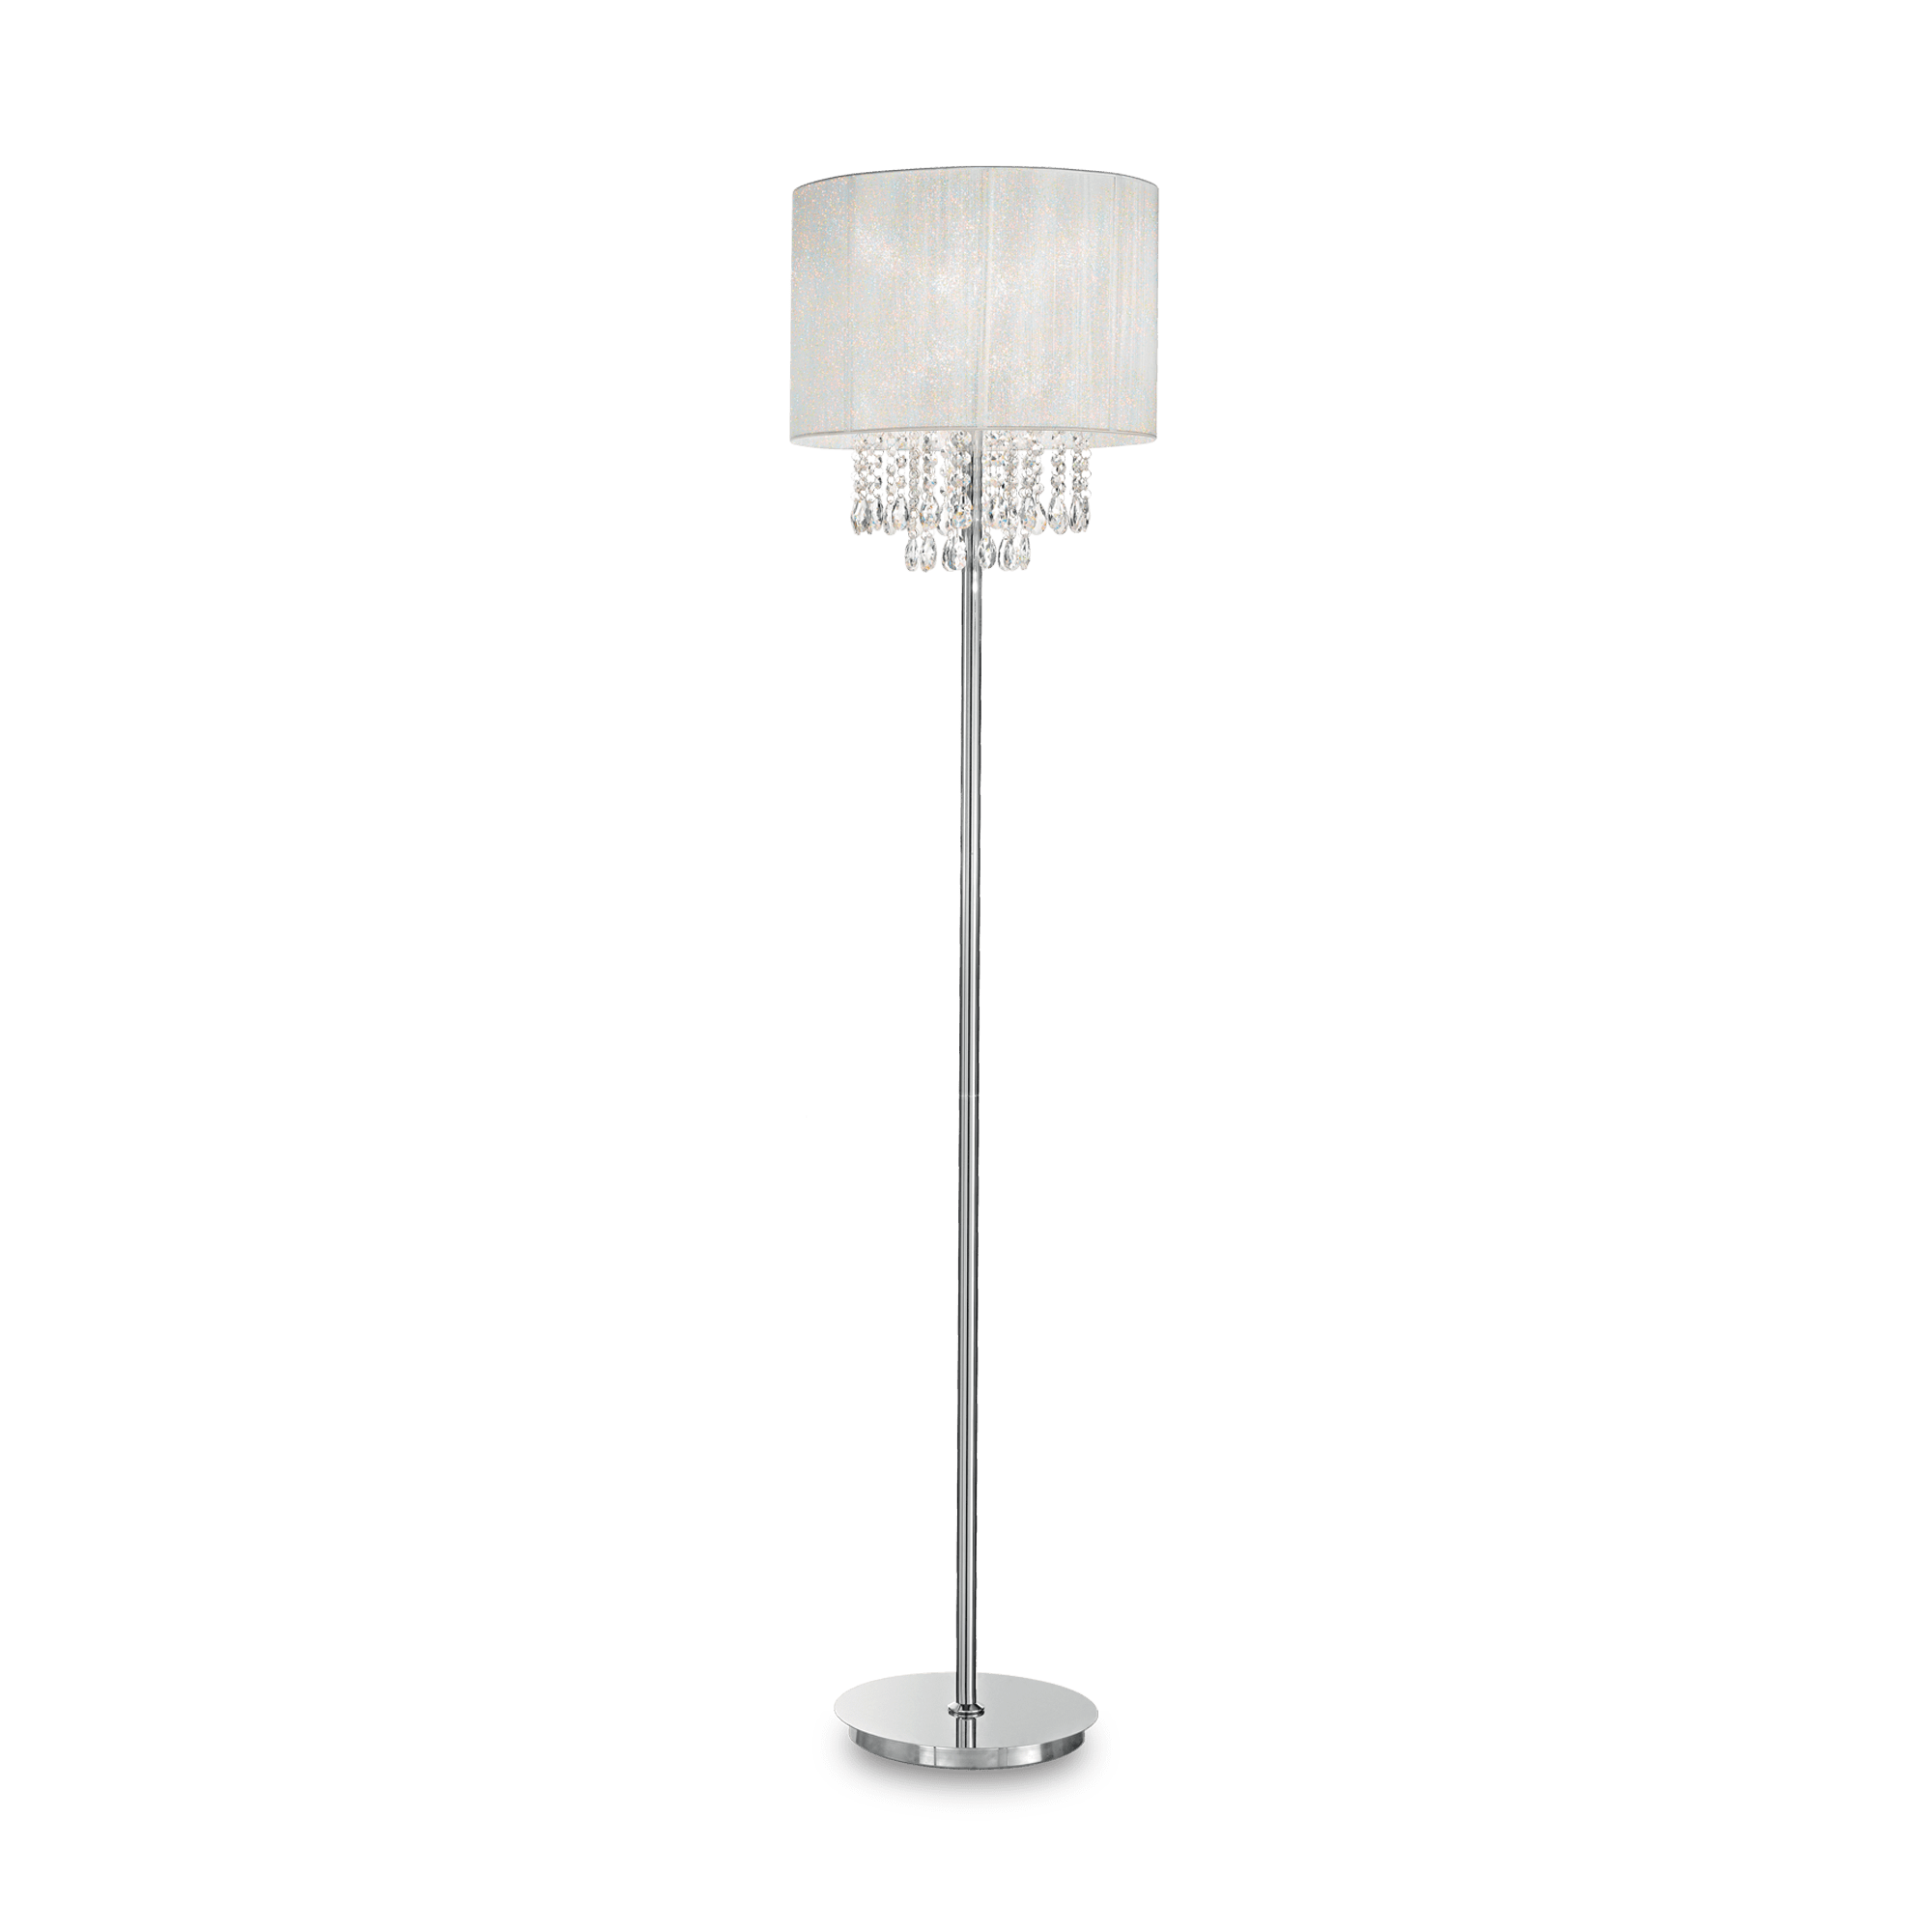 IDEALLUX OPERA PT1 FLOOR LAMP